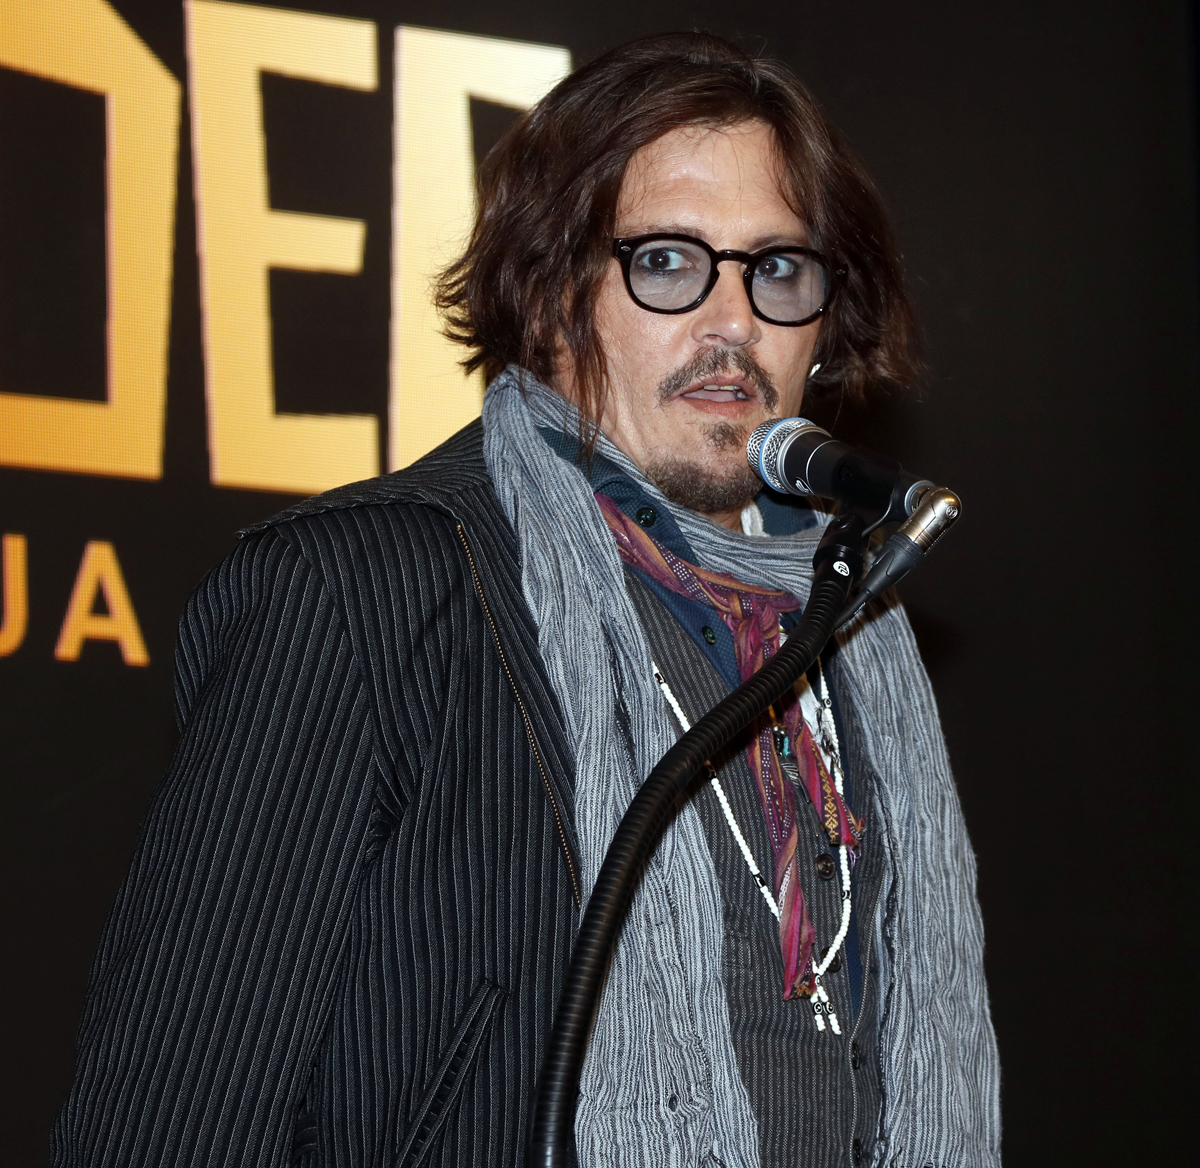 Johnny Depp Lost MILLIONS!